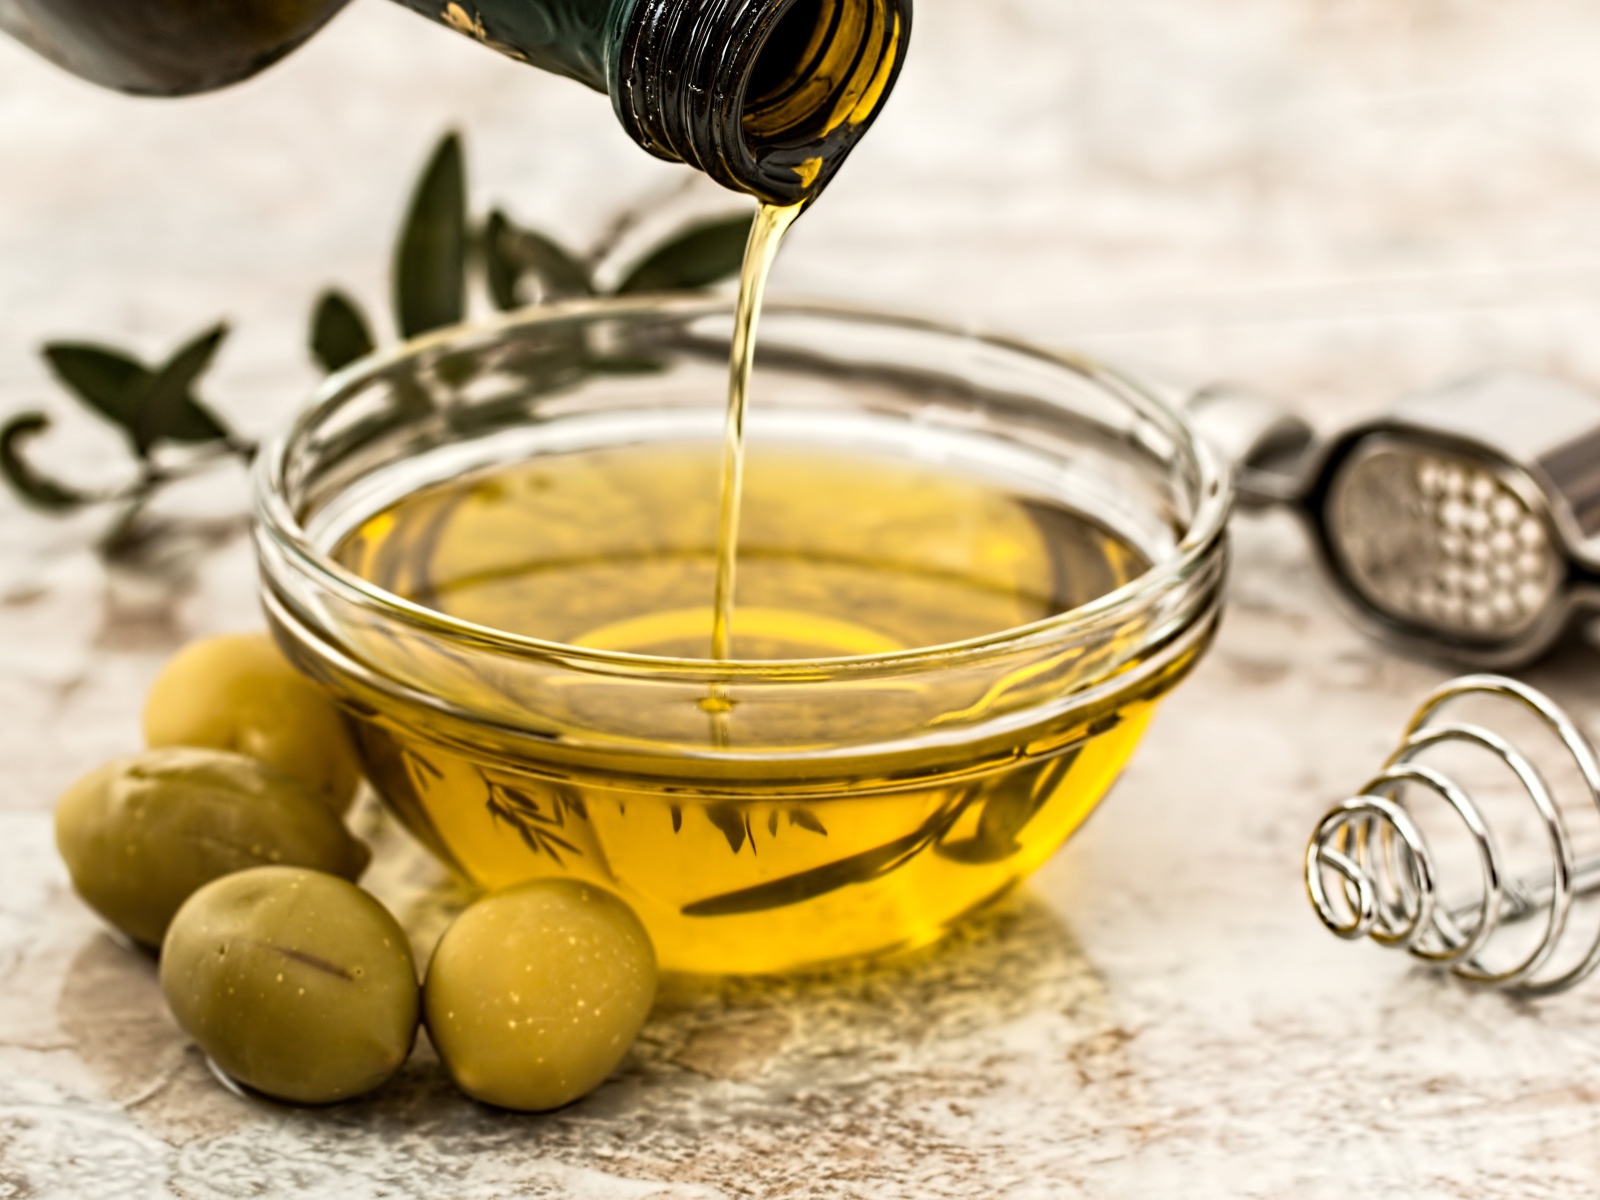 Оливковое масло в стеклянной тарелке на столе 